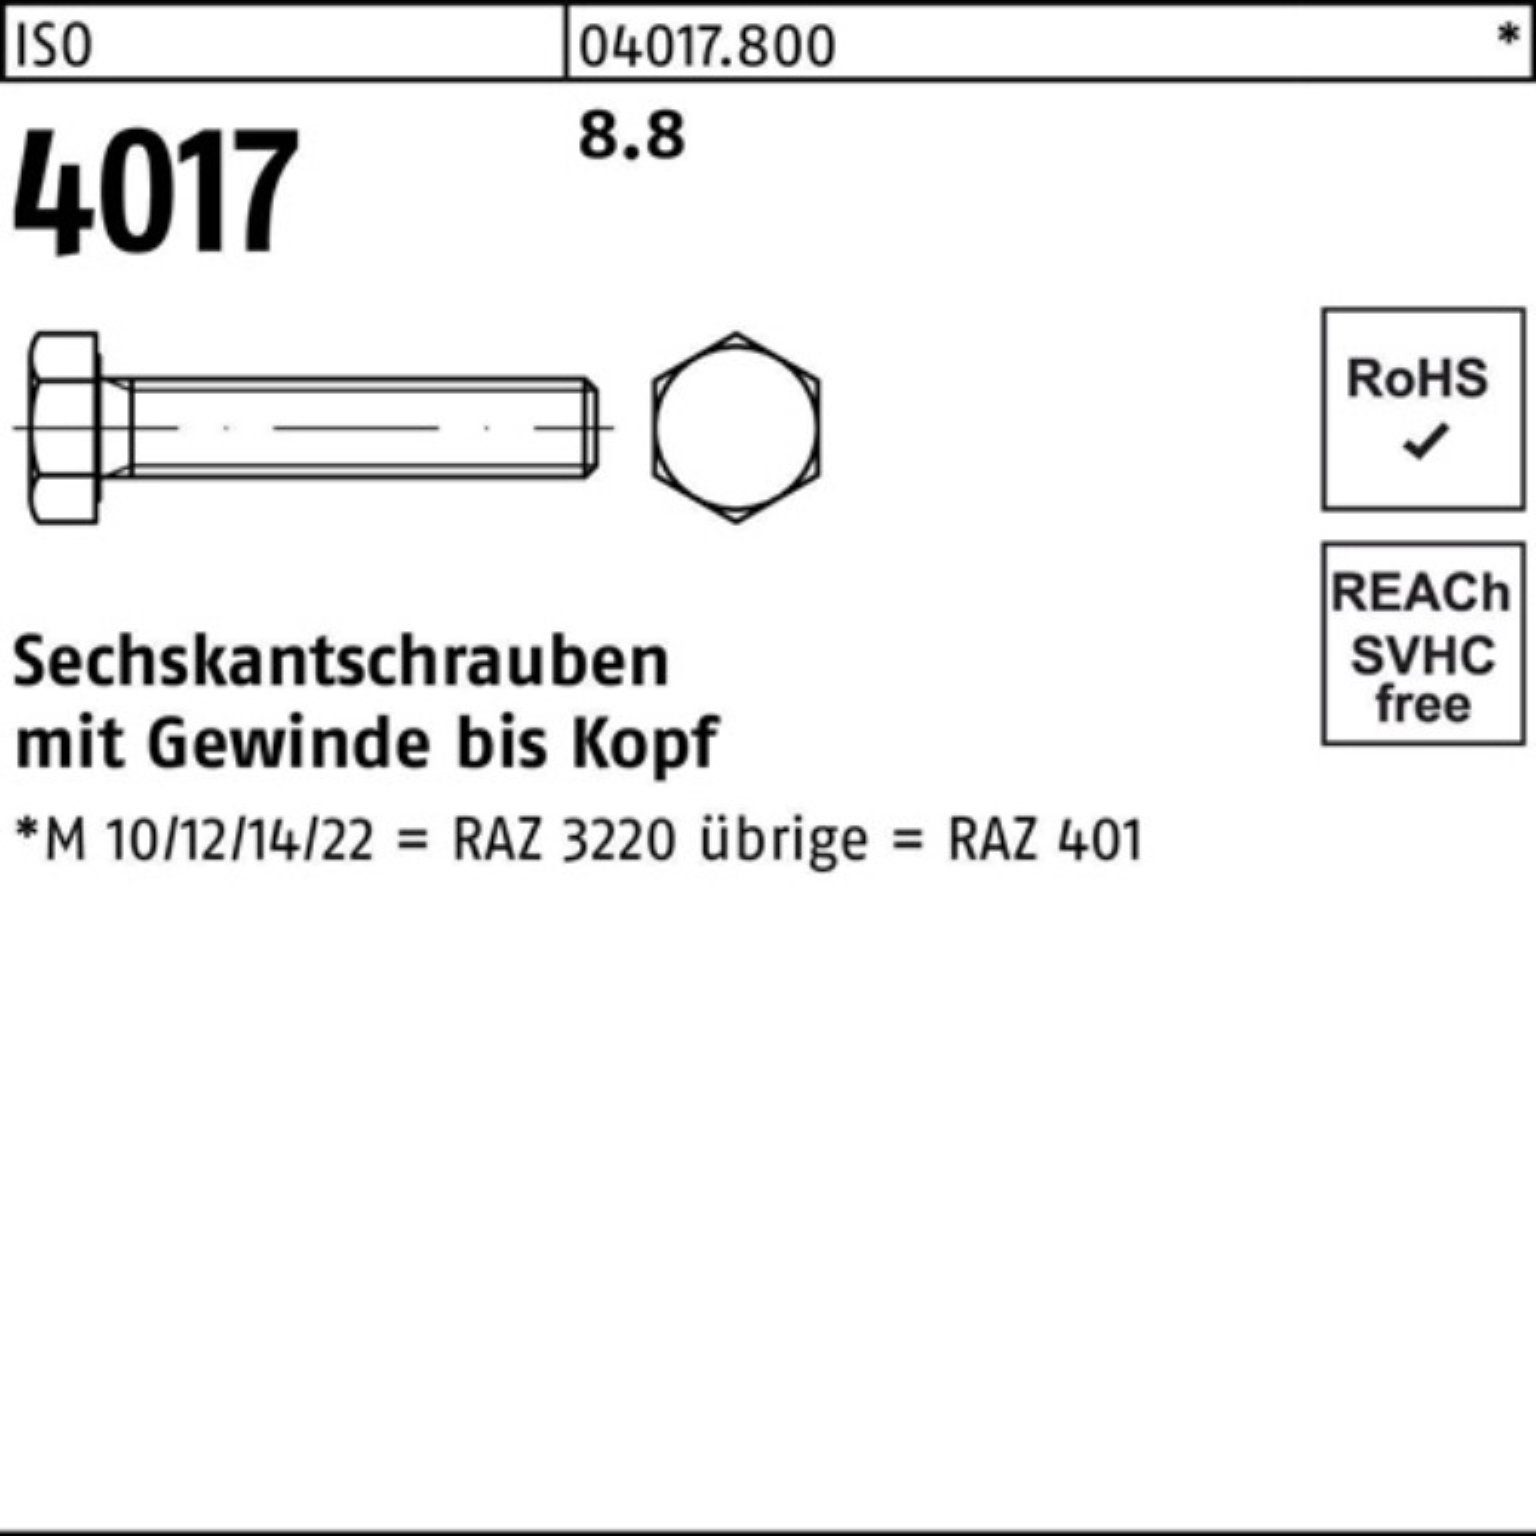 401 ISO Bufab Stück VG 4017 ISO Pack 200 55 Sechskantschraube M6x 200er 8.8 Sechskantschraube